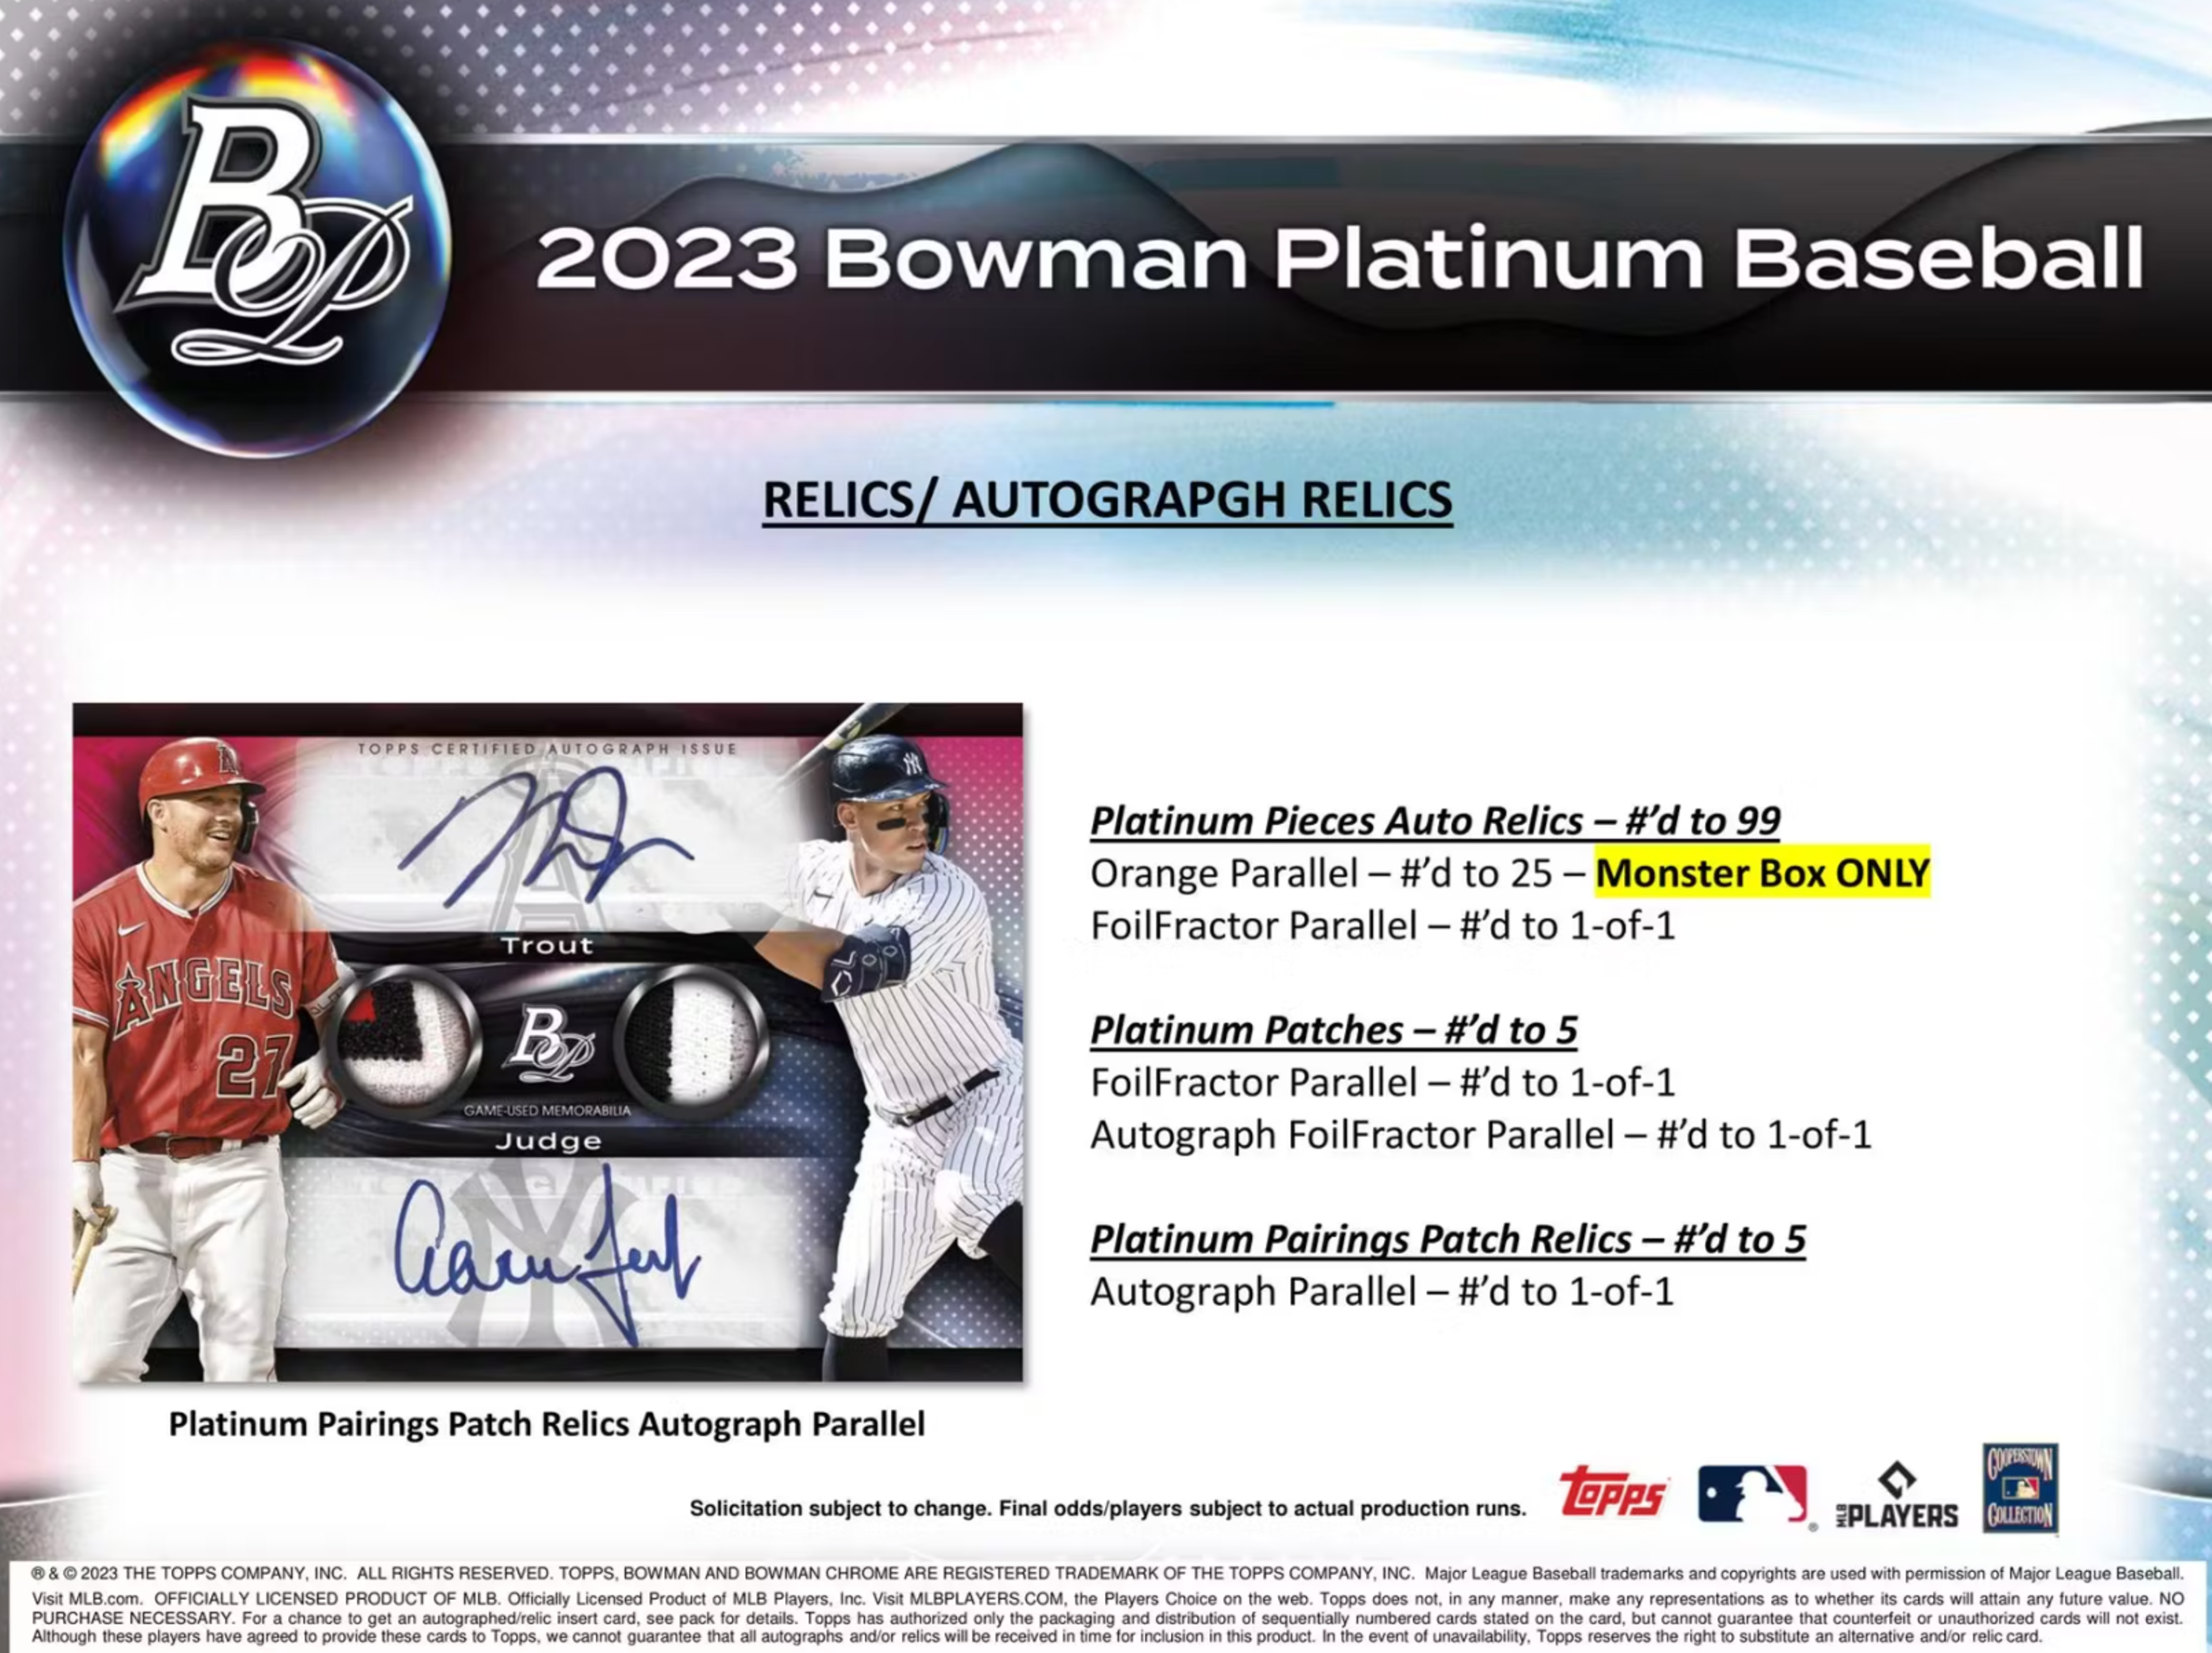 Alternate View 7 of 2023 Bowman Platinum Baseball Monster Box